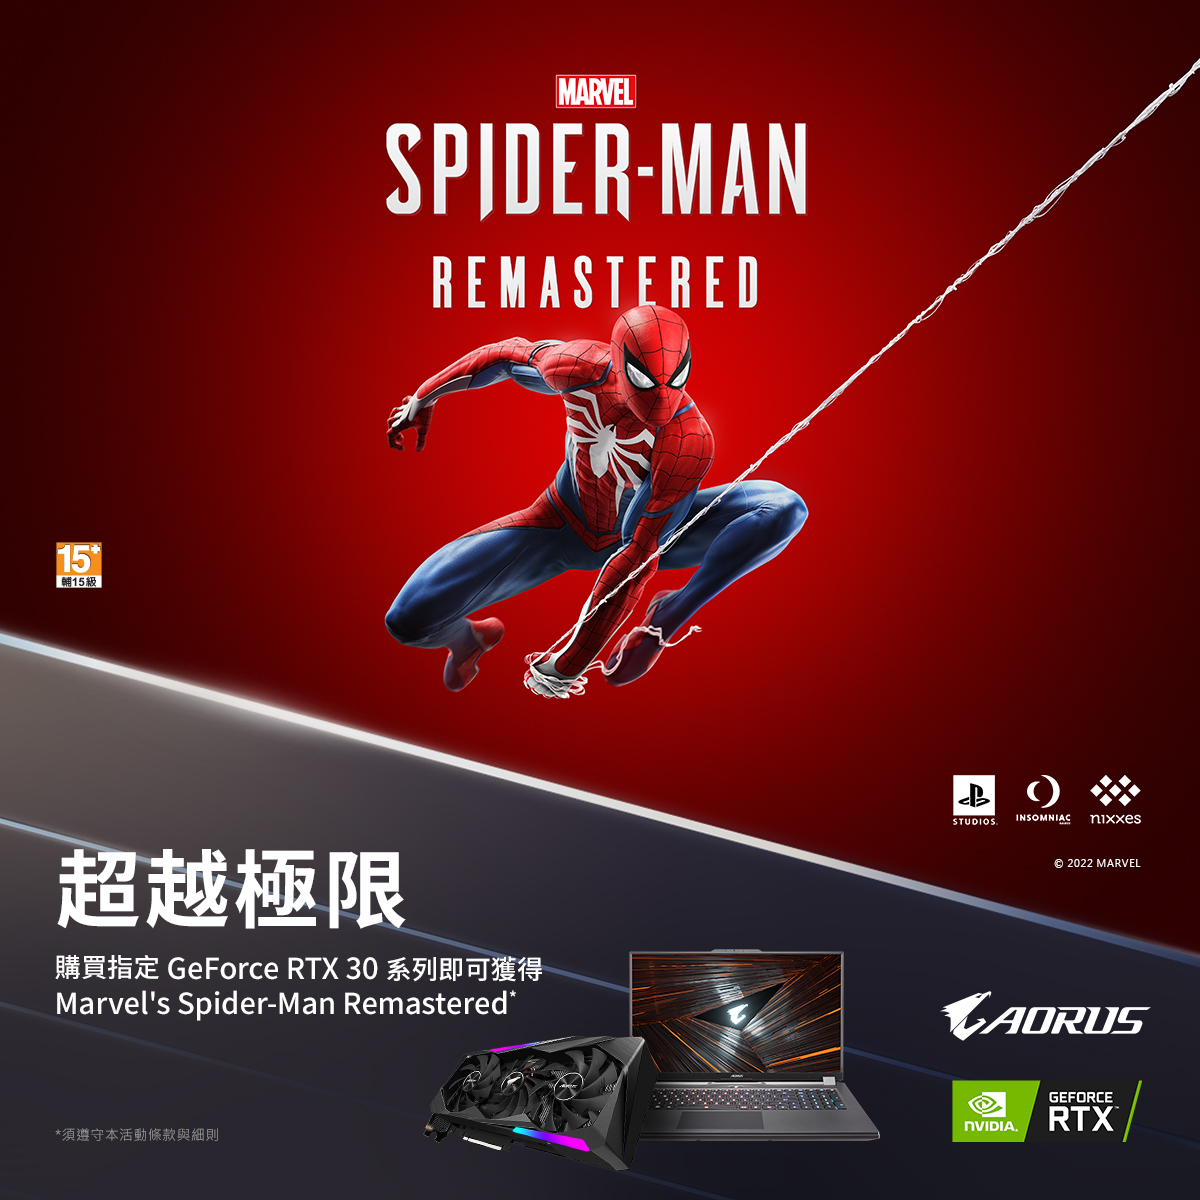 超越極限 | 購買技嘉Geforce RTX 3080以上顯示卡、組機或手提電腦，即可獲得《Marvel's Spider-Man Remastered》